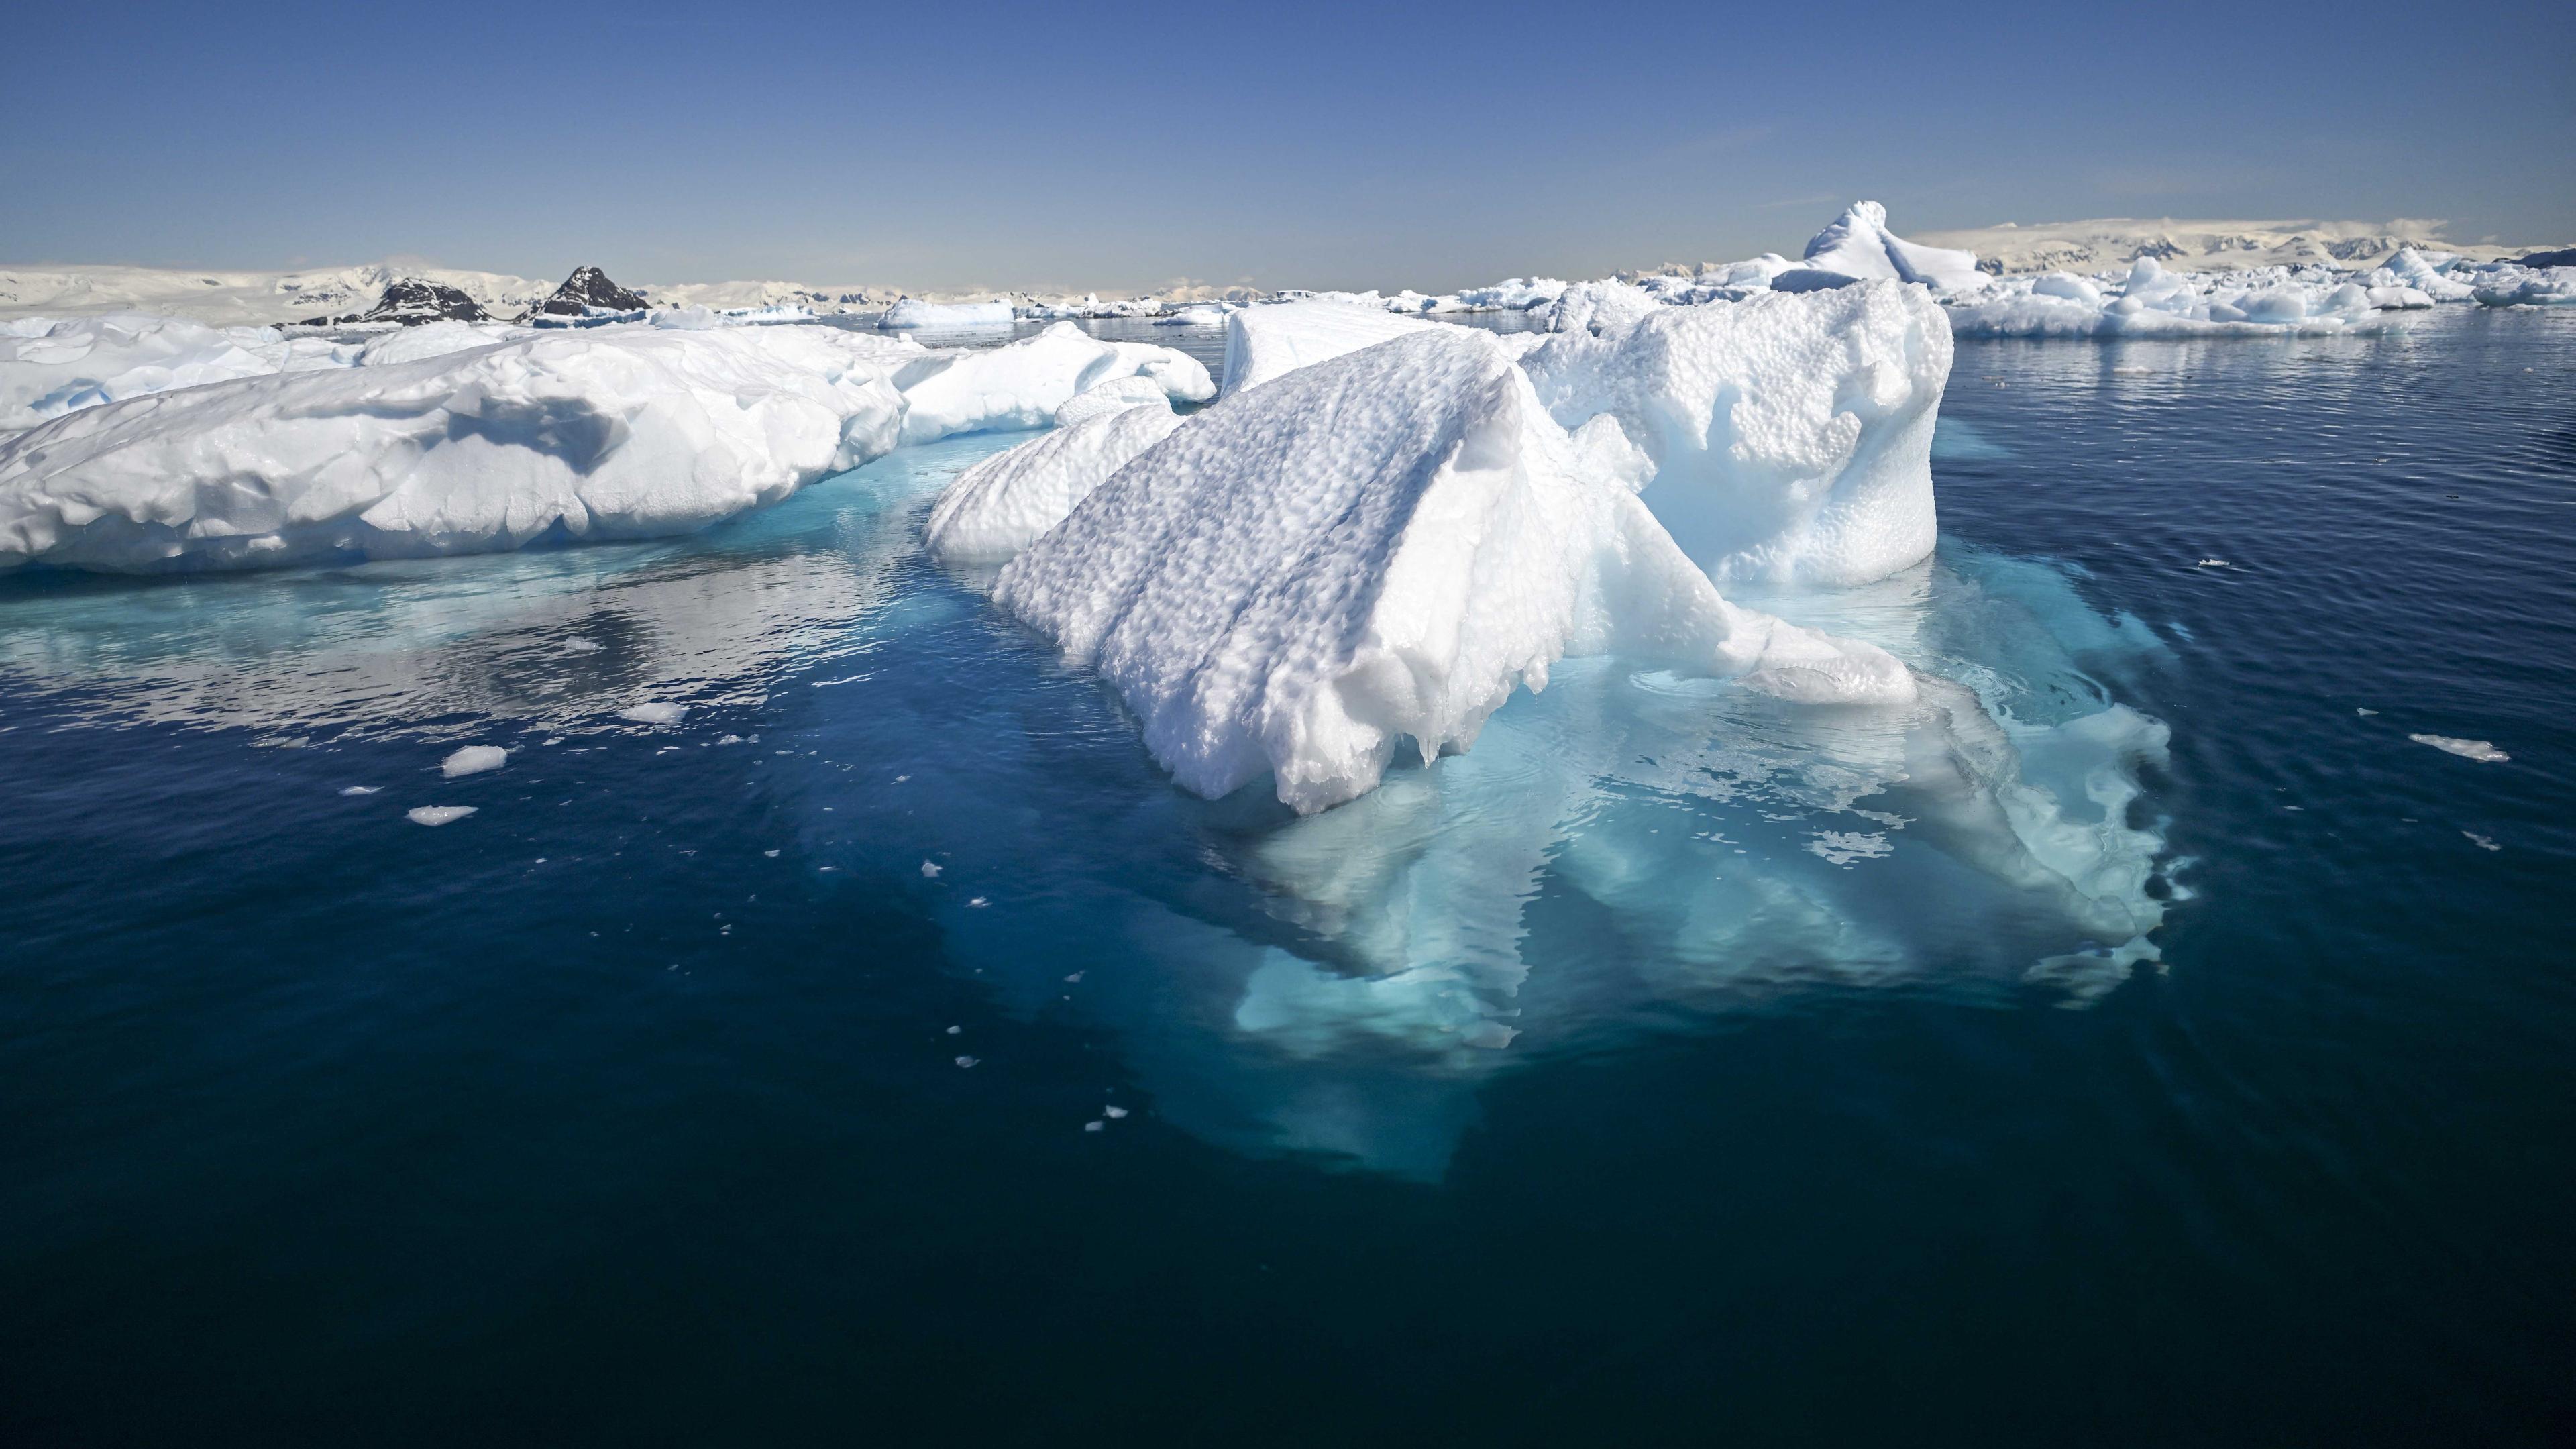 Ett isberg i Antarktis. Entreprenörer hoppas kunna lösa problemen och utnyttja den stora färskvattenresurs som isbergen runt polerna utgör. Foto: Juan Barreto/AFP via Getty Images